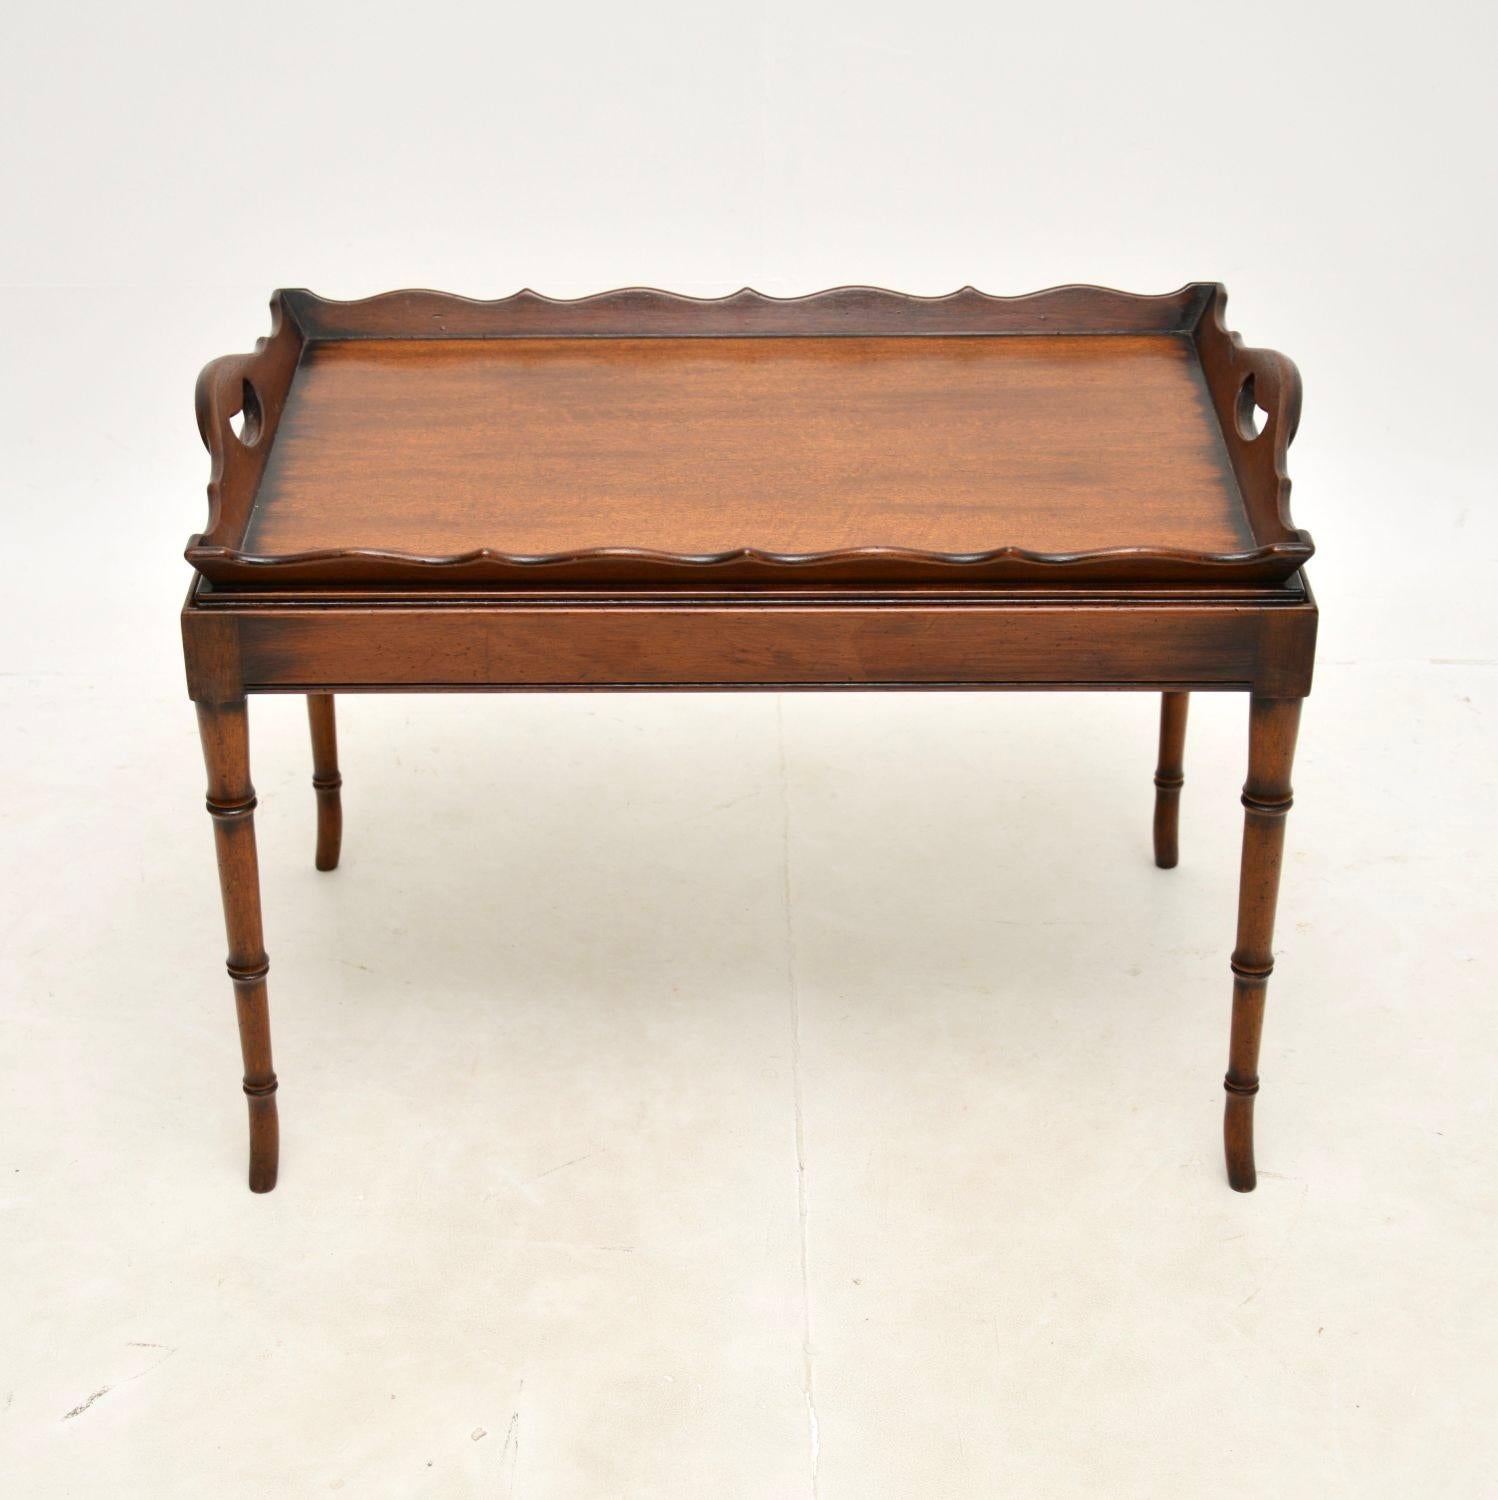 Une table basse ancienne à plateau, élégante et joliment conçue. Il a été fabriqué en Angleterre, il date des années 1930 environ.

La qualité est fantastique, le dessus a un bord en croûte de tarte surélevé avec des poignées intégrées, il se